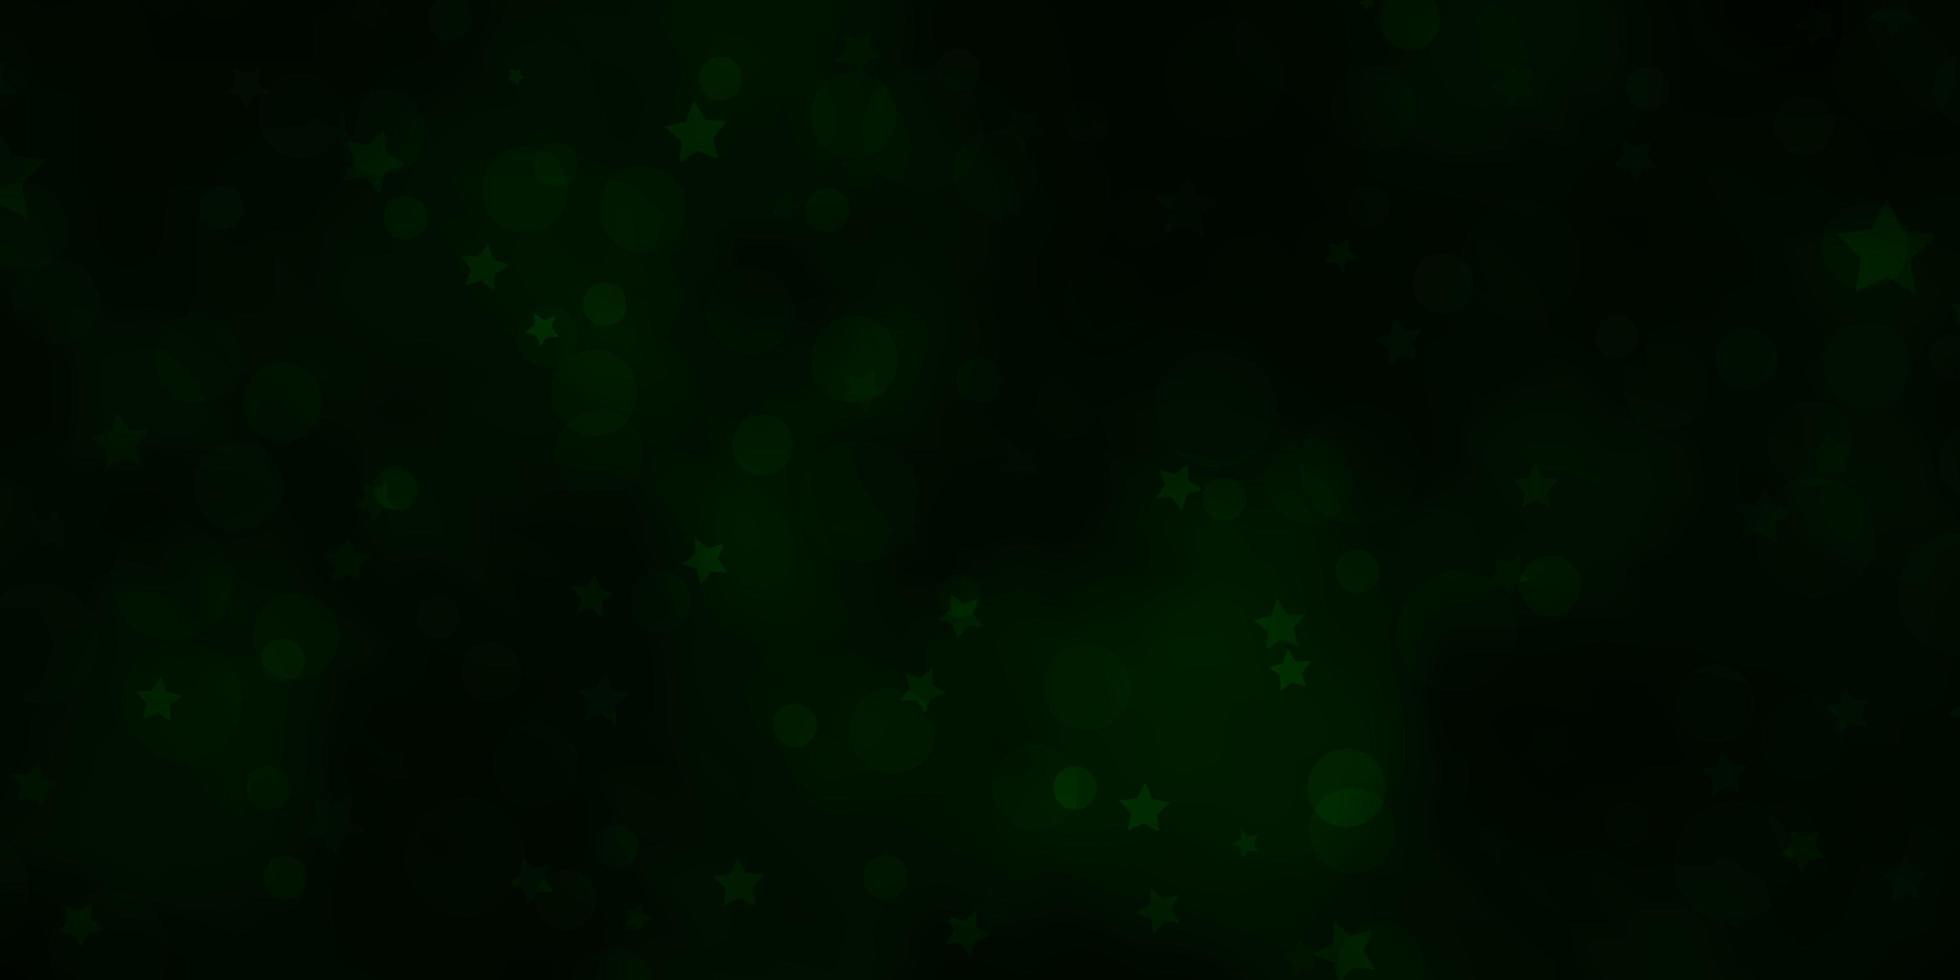 sfondo vettoriale verde scuro con cerchi, stelle.